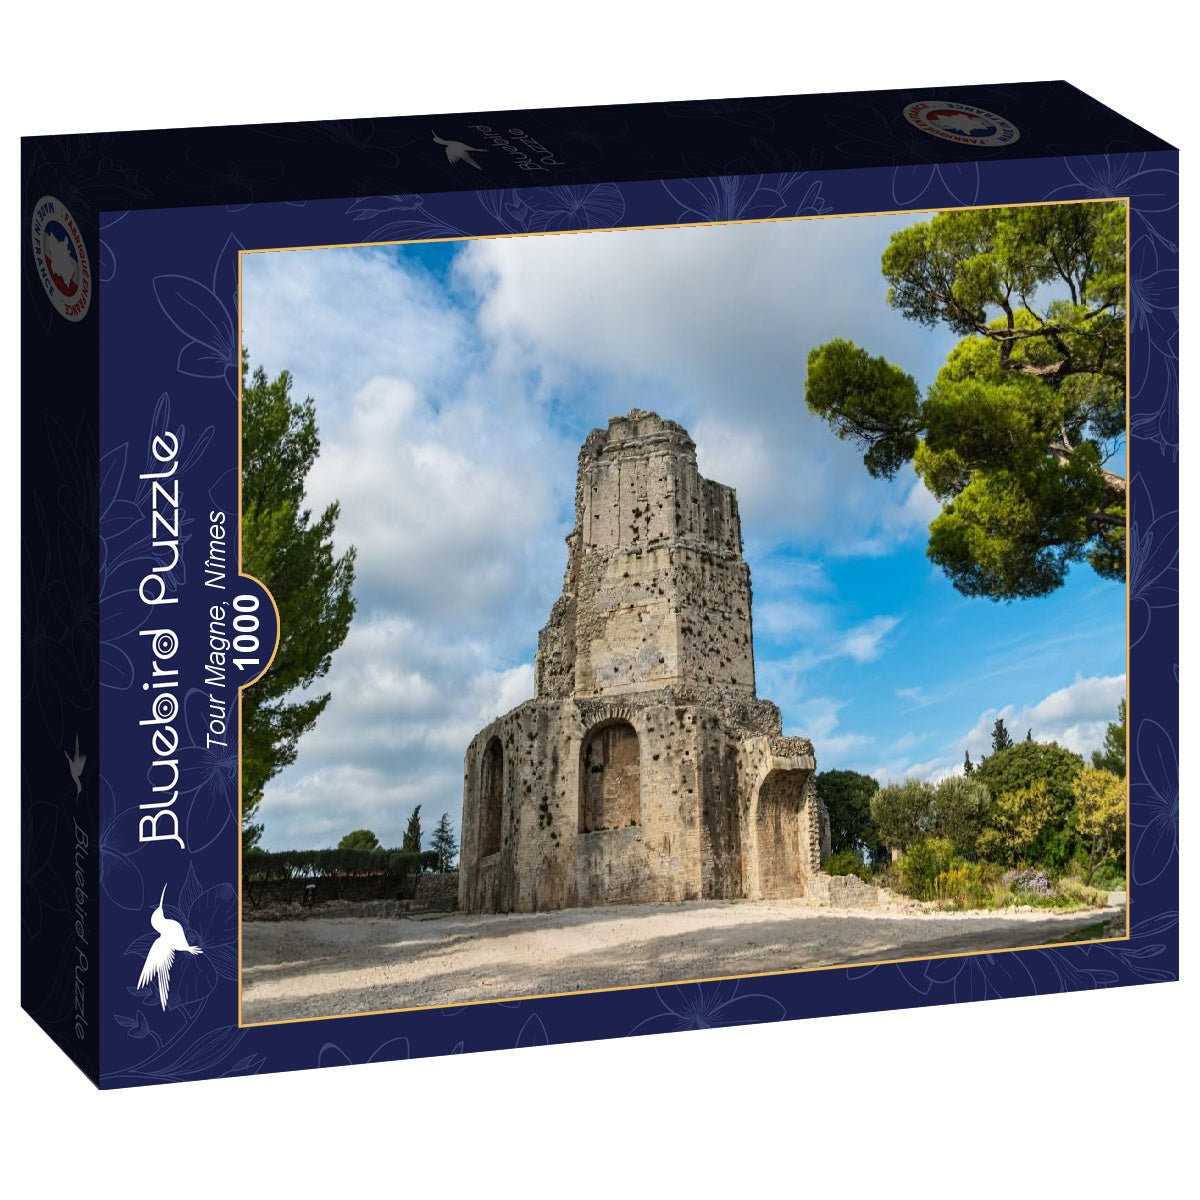 Bluebird Puzzle - Tour Magne, Nîmes - 1000 Piece Jigsaw Puzzle